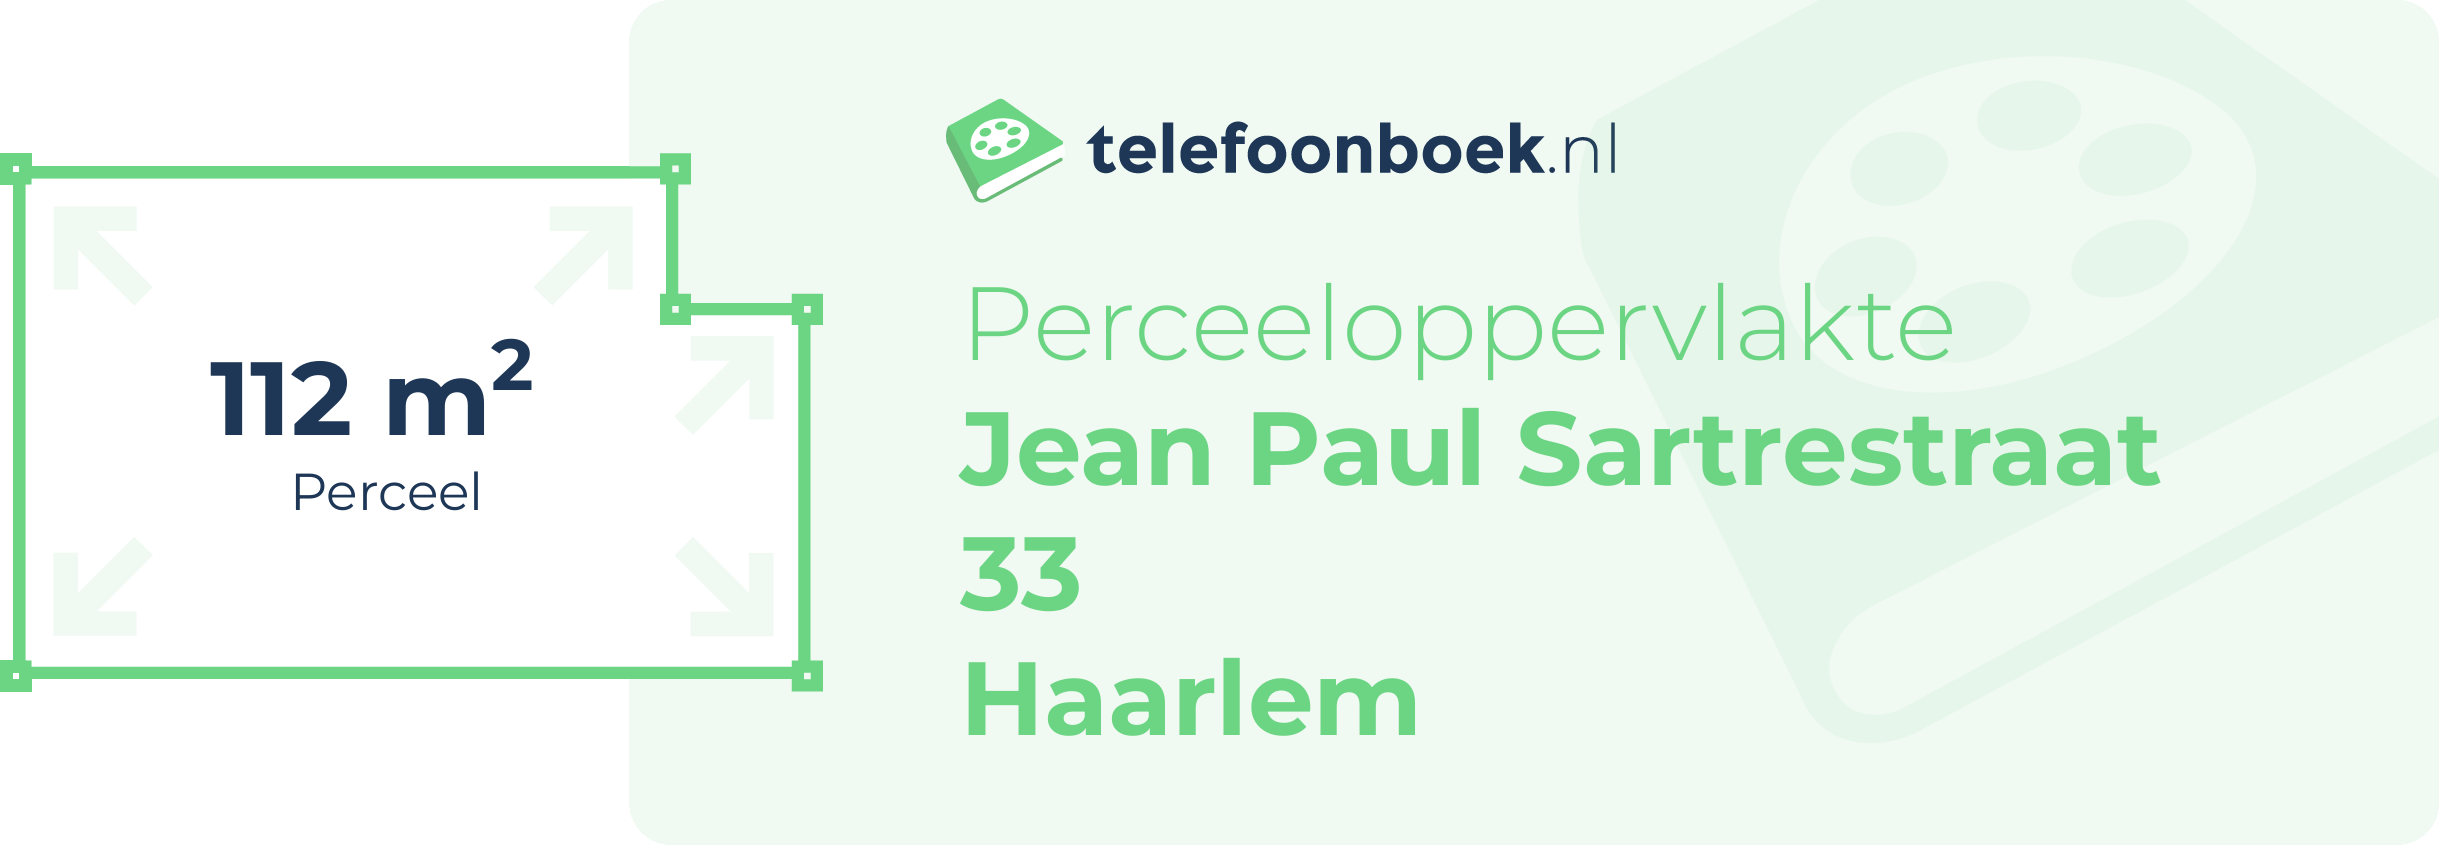 Perceeloppervlakte Jean Paul Sartrestraat 33 Haarlem